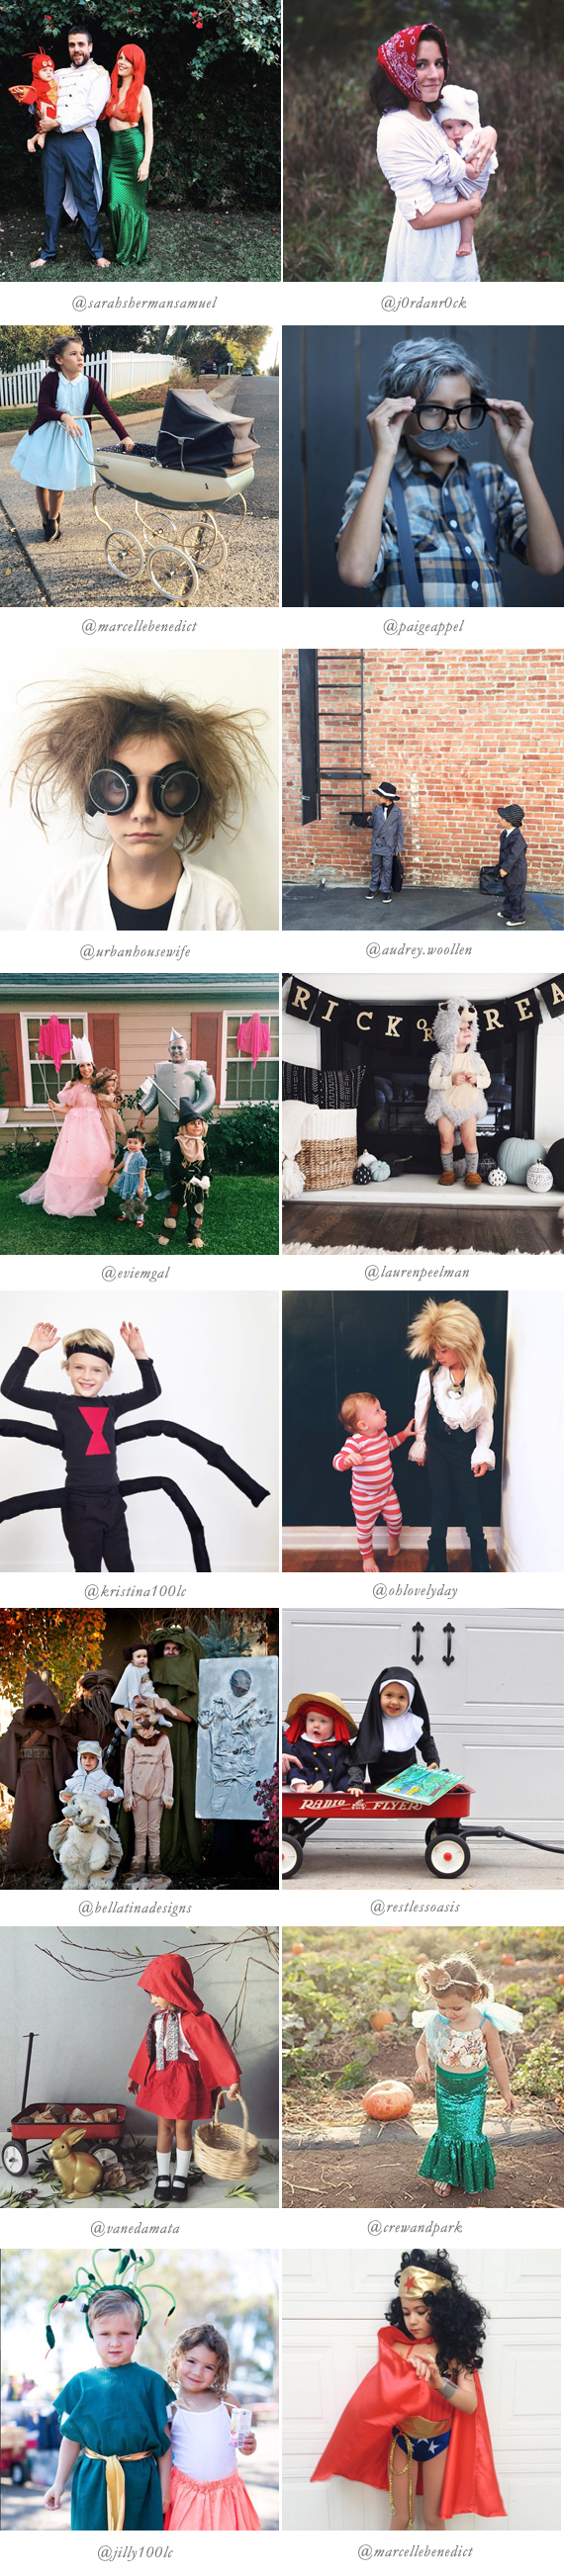 Best halloween costumes of 2015